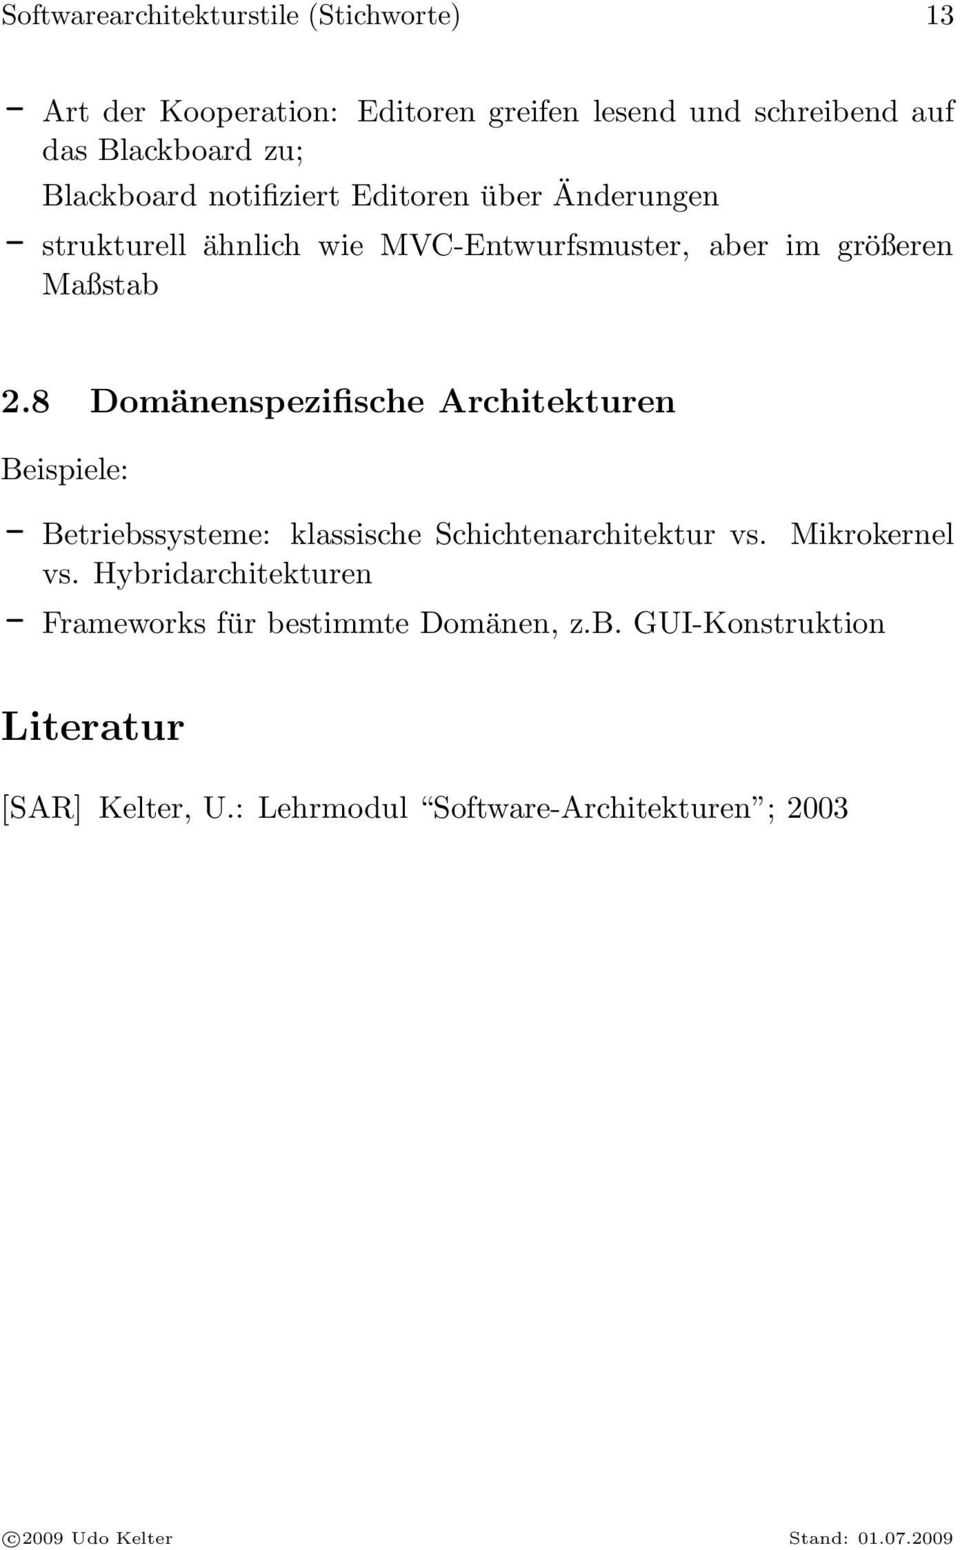 8 Domänenspezifische Architekturen Beispiele: - Betriebssysteme: klassische Schichtenarchitektur vs. Mikrokernel vs.